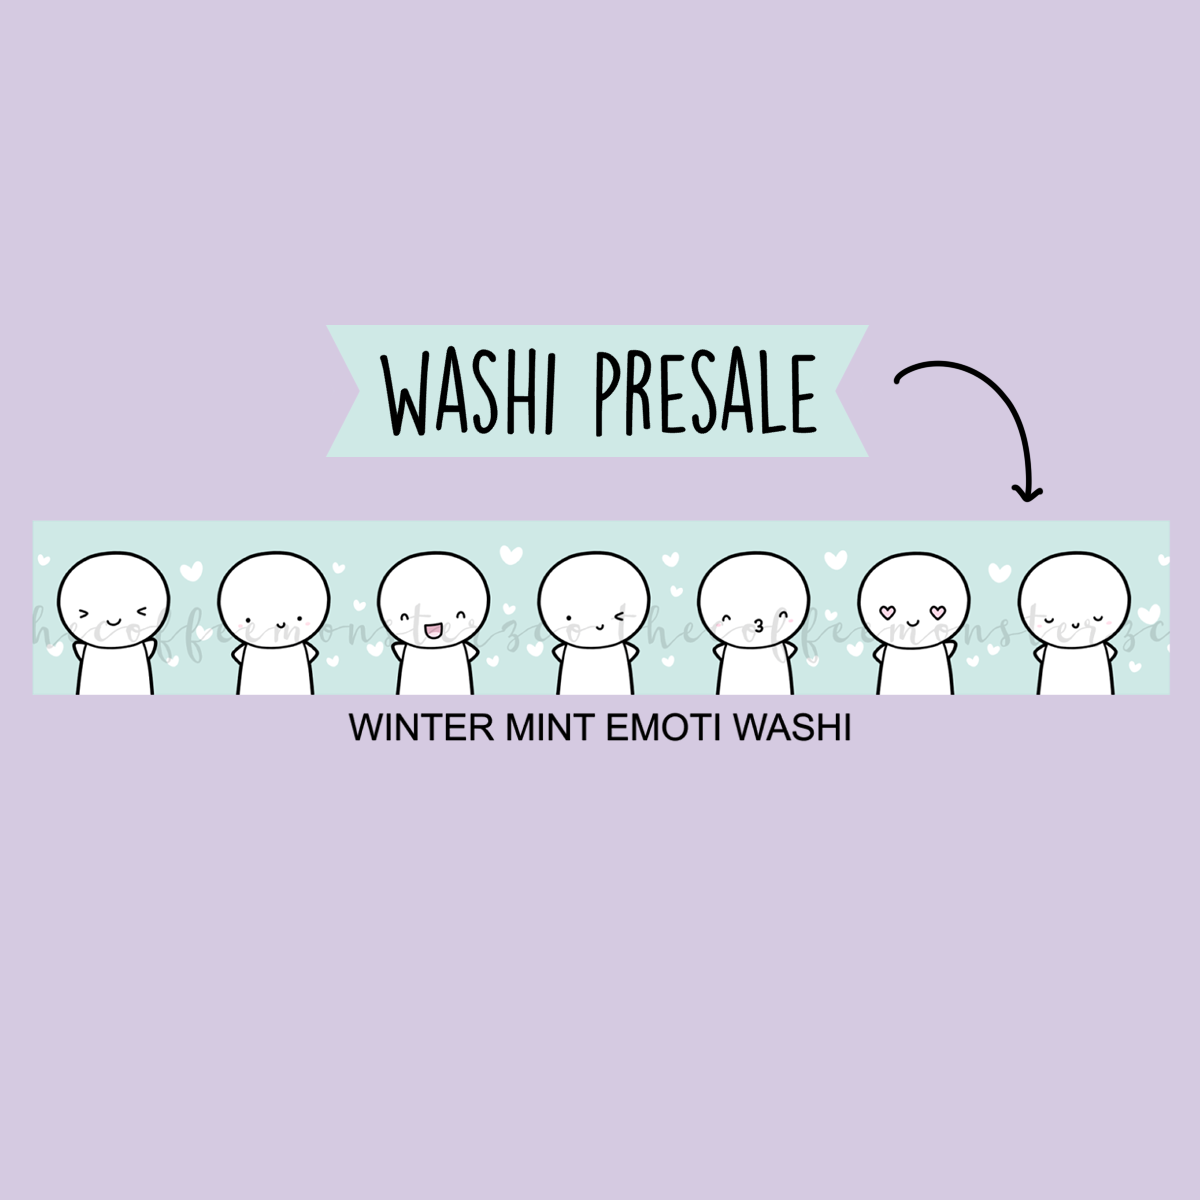 Winter Mint Emoti Washi (Limit 1 per person)